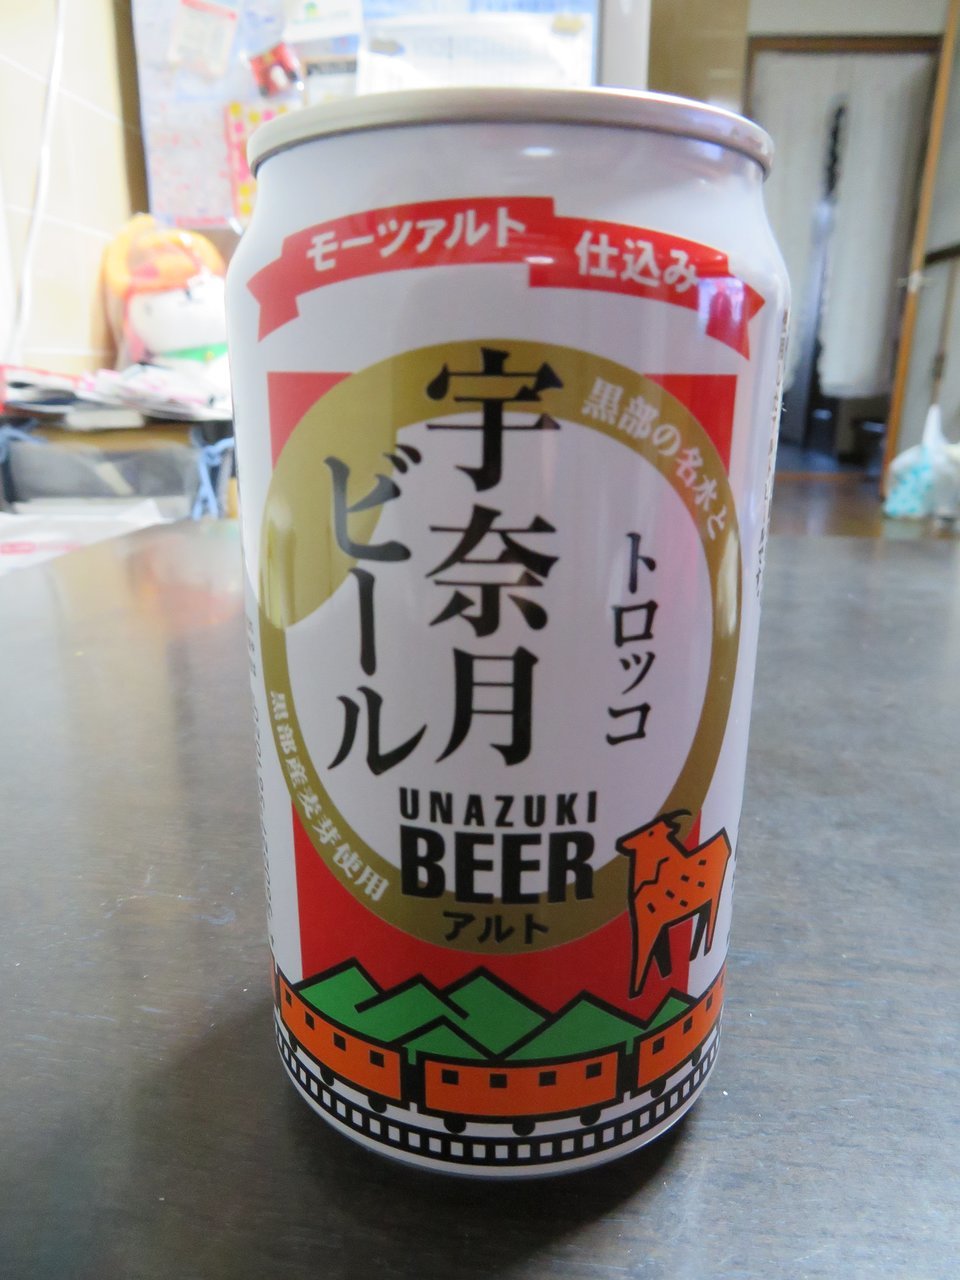 Unazuki Beer